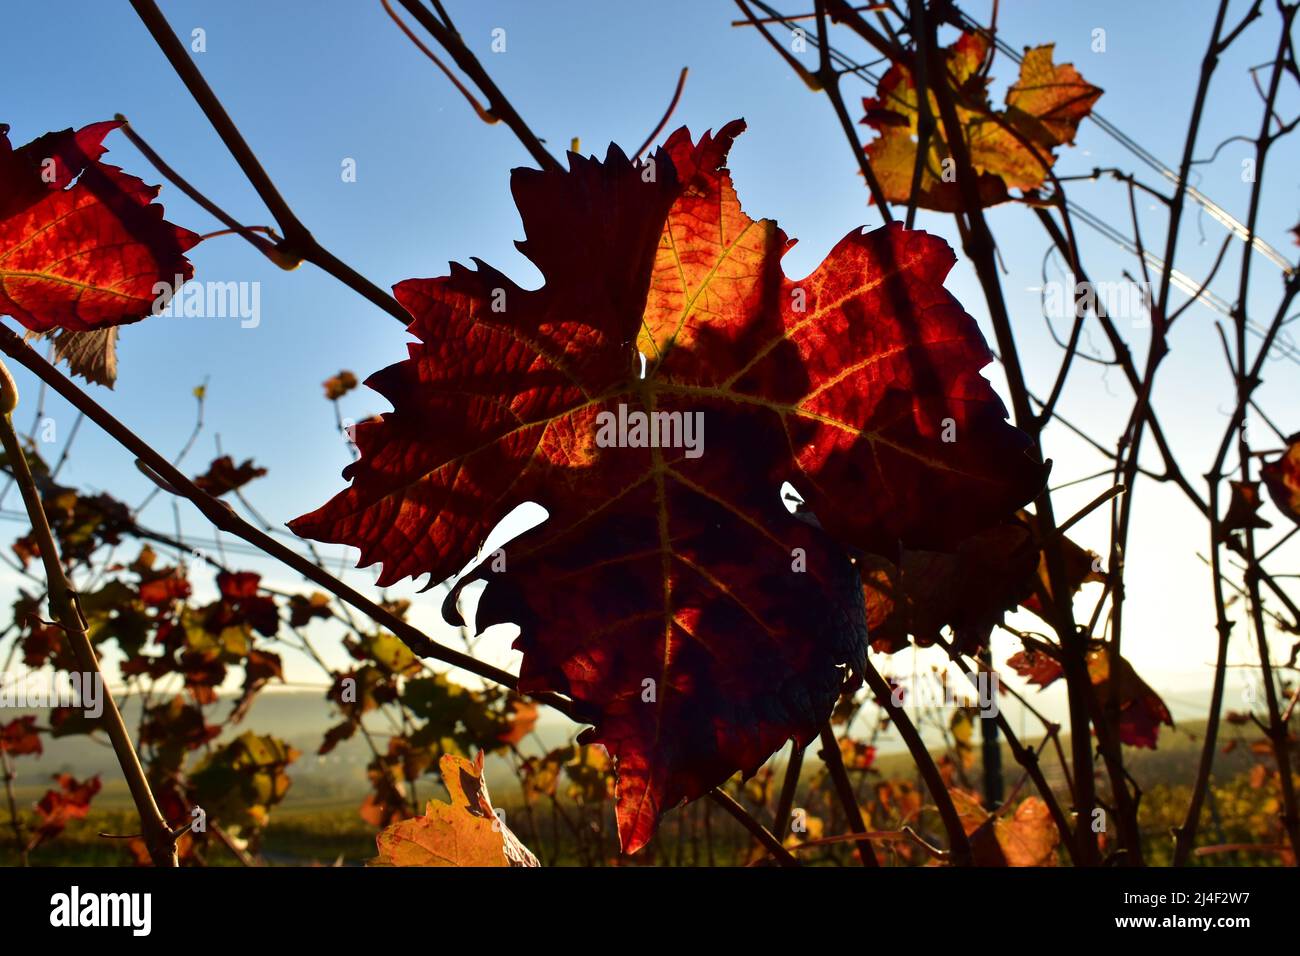 Wein, Wine, Grape Leaf, Wine Leaf, Weinberg, Vineyards, Autumn, Autumn Colors, Herbst, Herbstfarben, Sonnenstrahlen, Sonne, Rot, Herbstlaub, Beauty Stock Photo